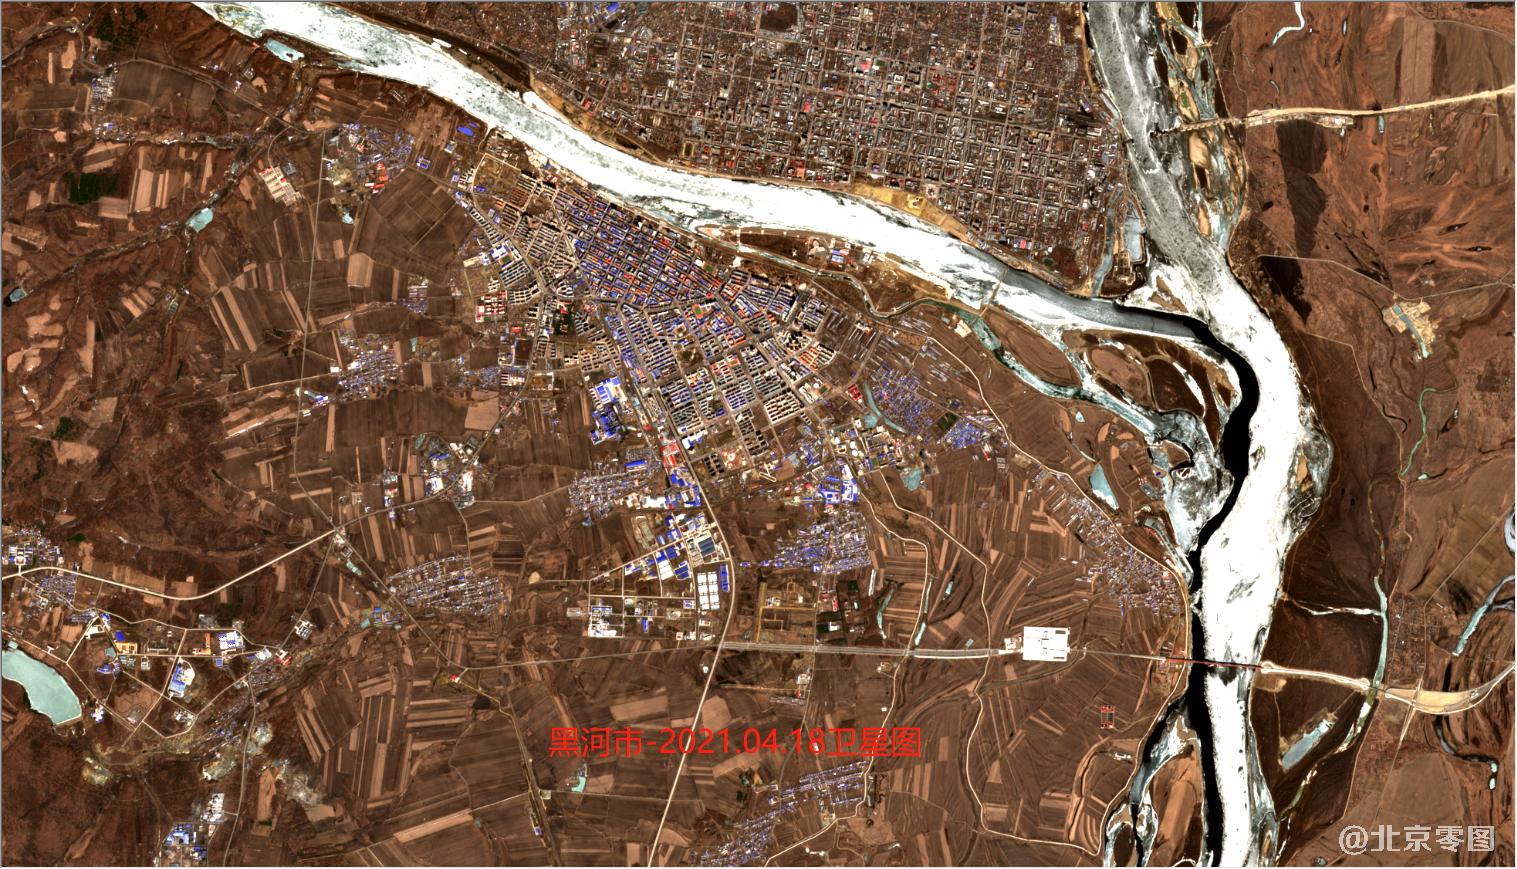 中国人寿张乃丹事件地点卫星图-黑河市卫星图